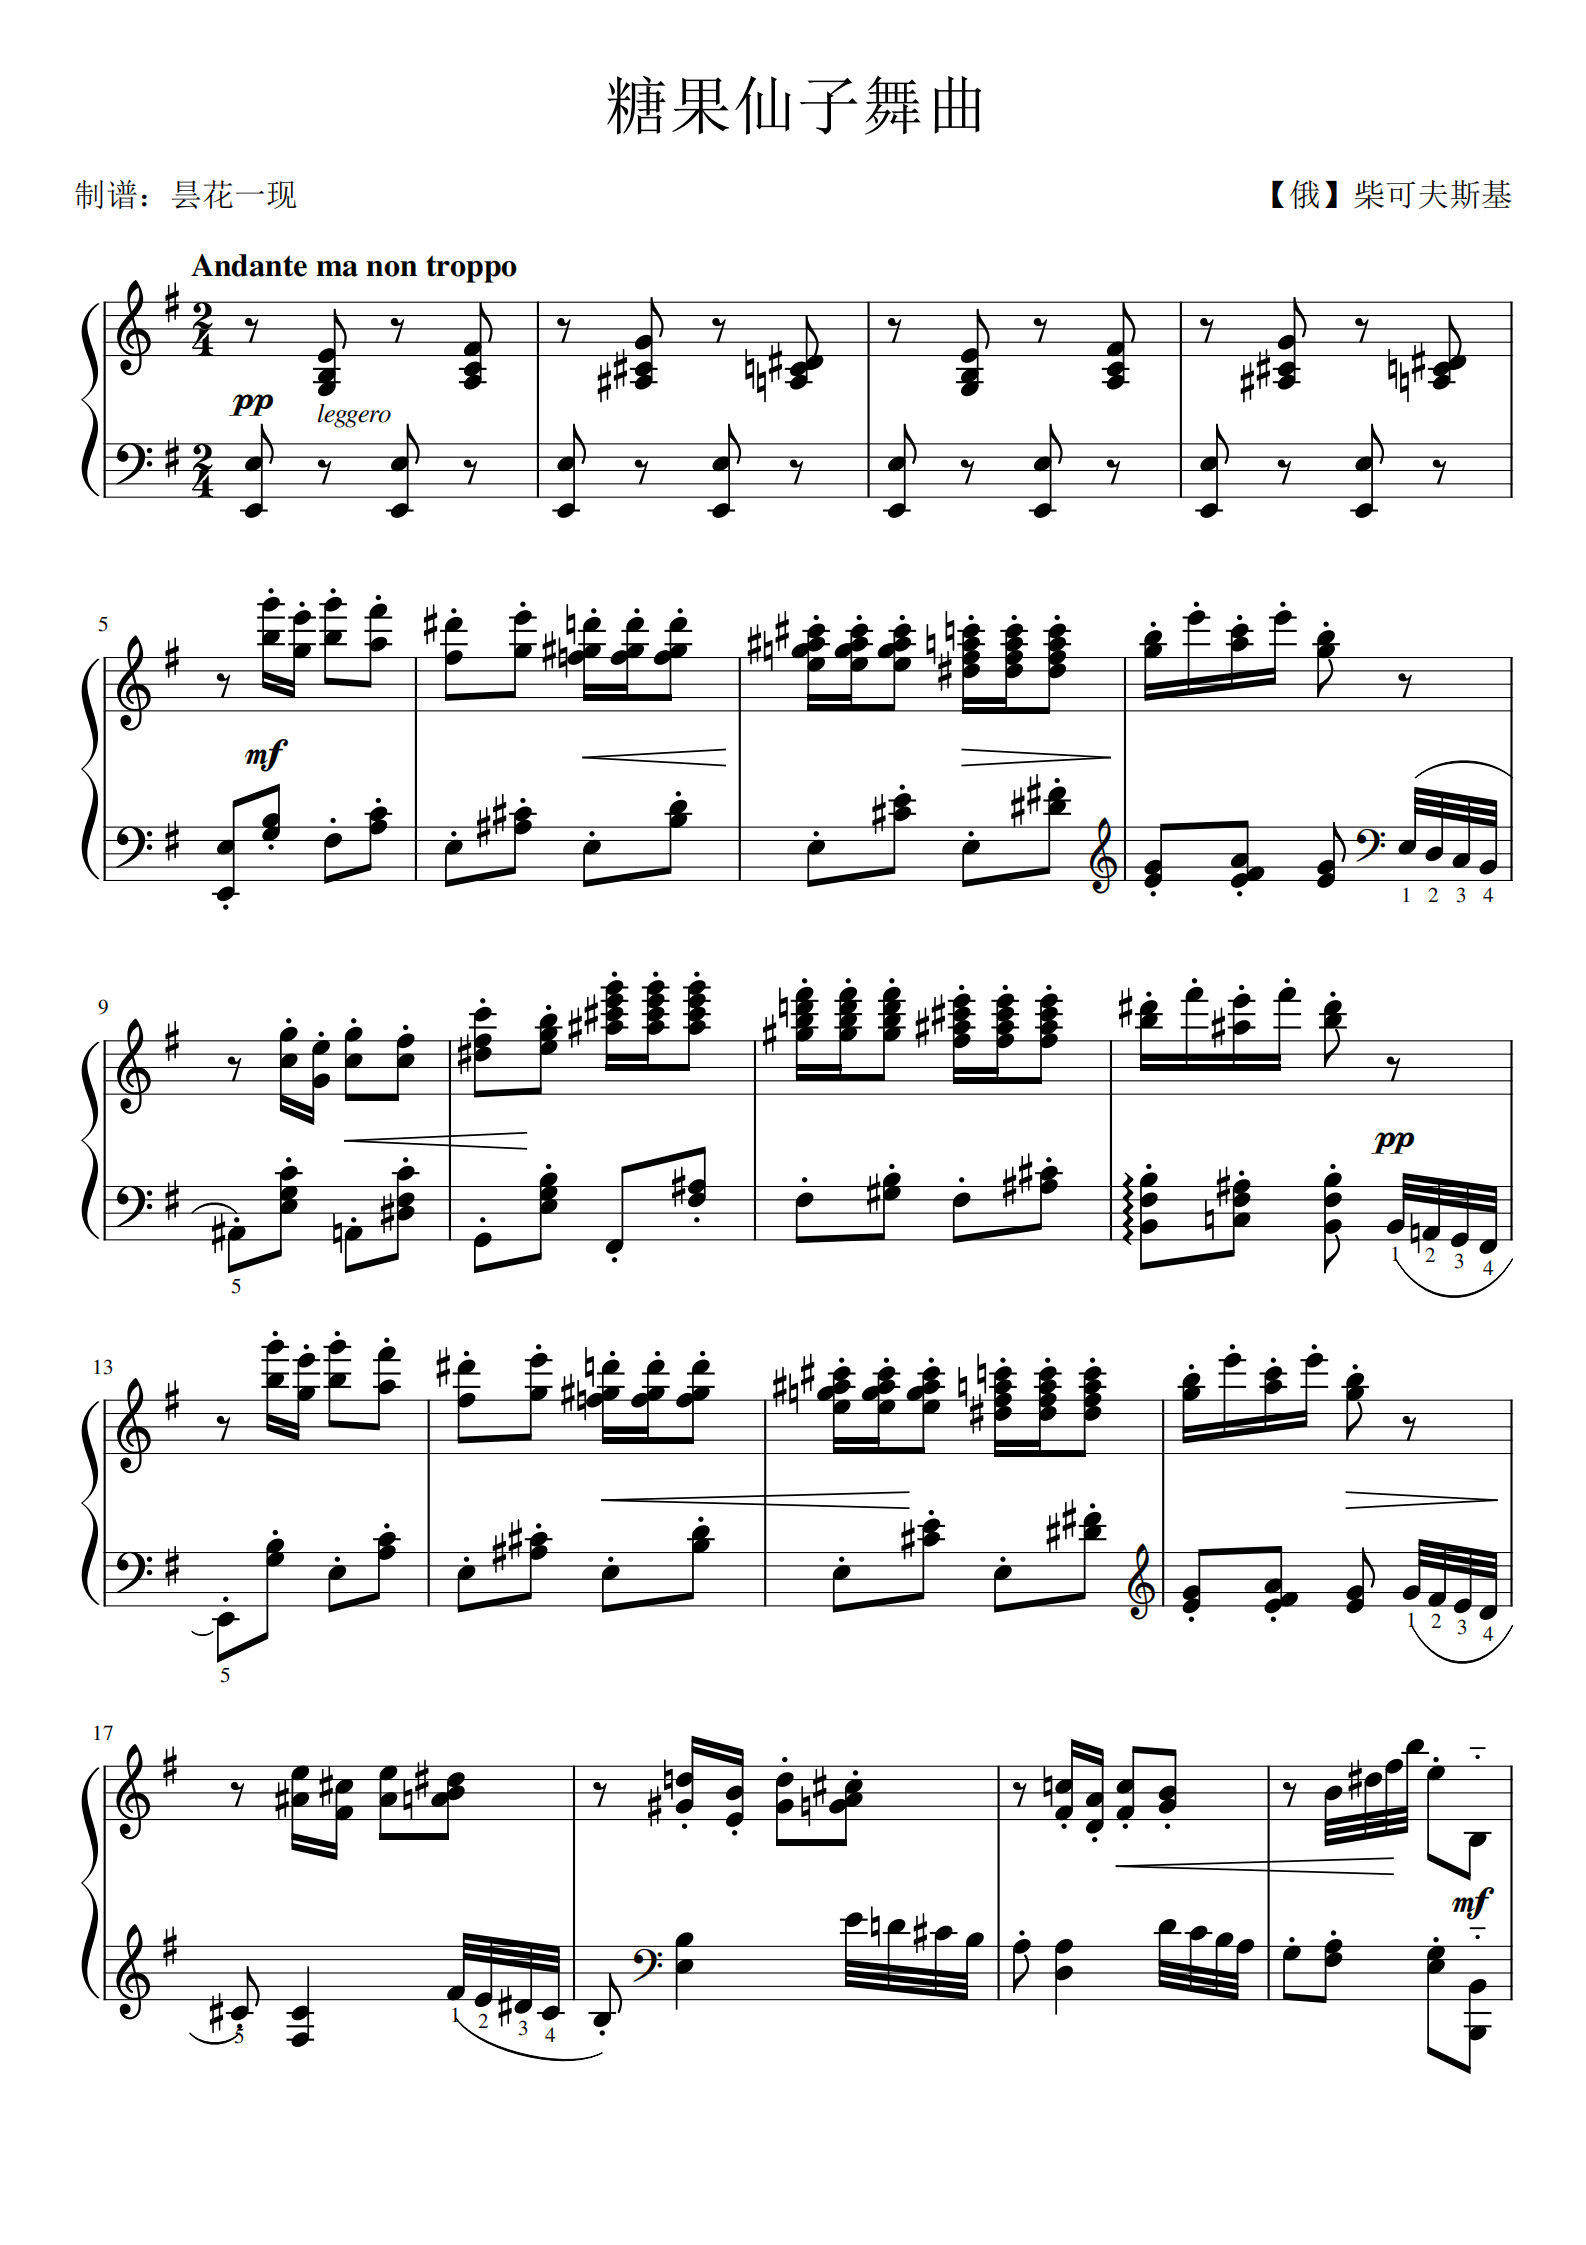 糖果仙子完整版钢琴谱图片